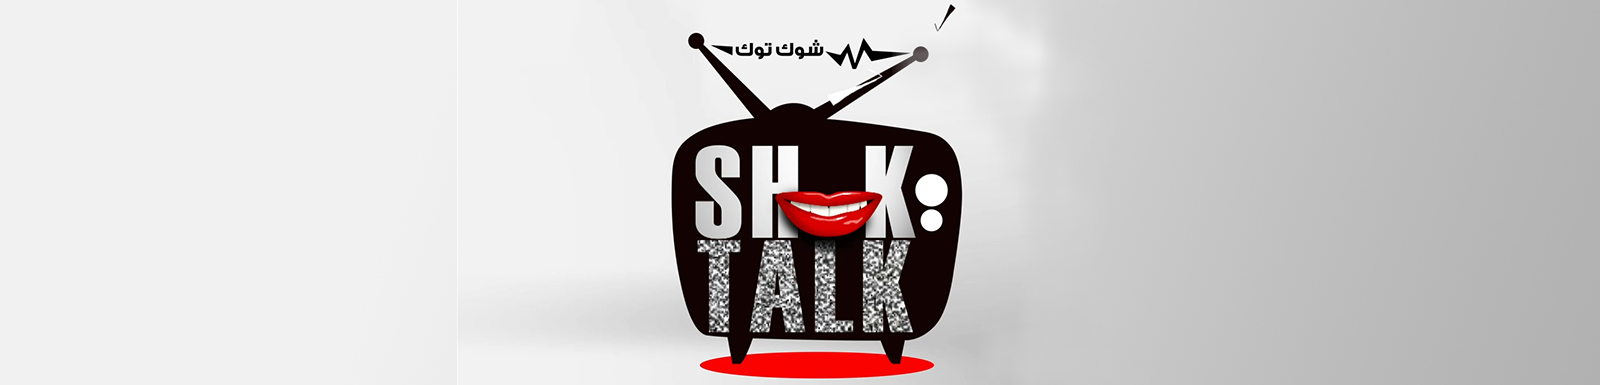 تحميل برنامج شوك توك الحلقة 36 كاملة MBC shahid شاهد نت